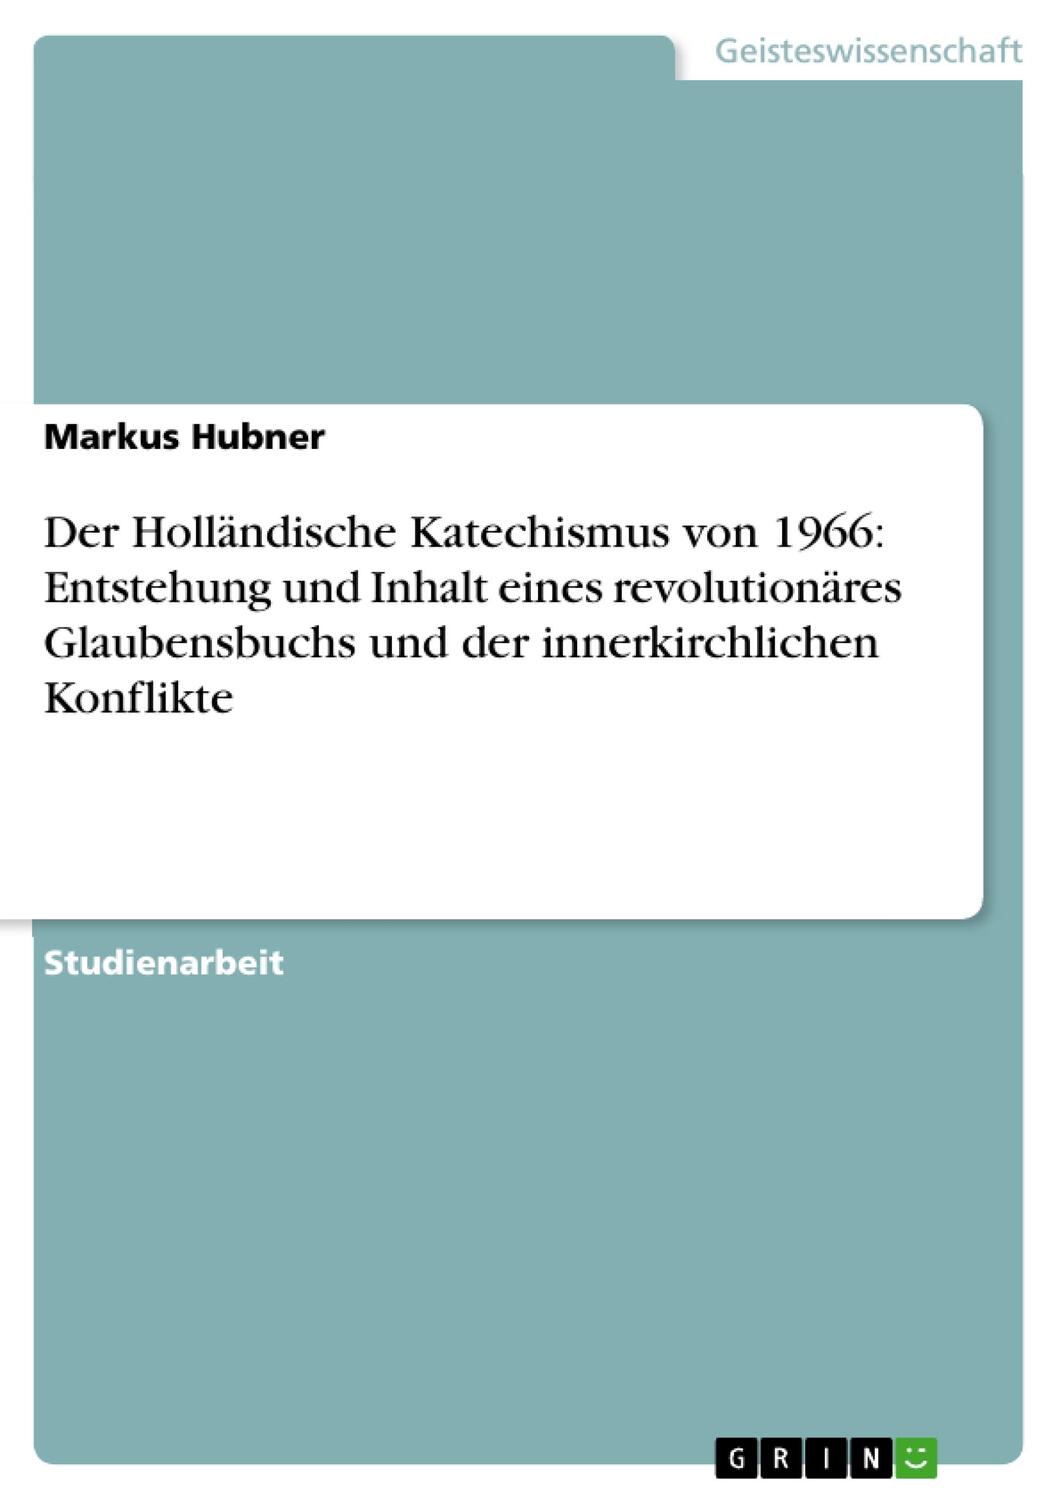 Der Holländische Katechismus von 1966: Entstehung und Inhalt eines revolutionäres Glaubensbuchs und der innerkirchlichen Konflikte - Hubner, Markus